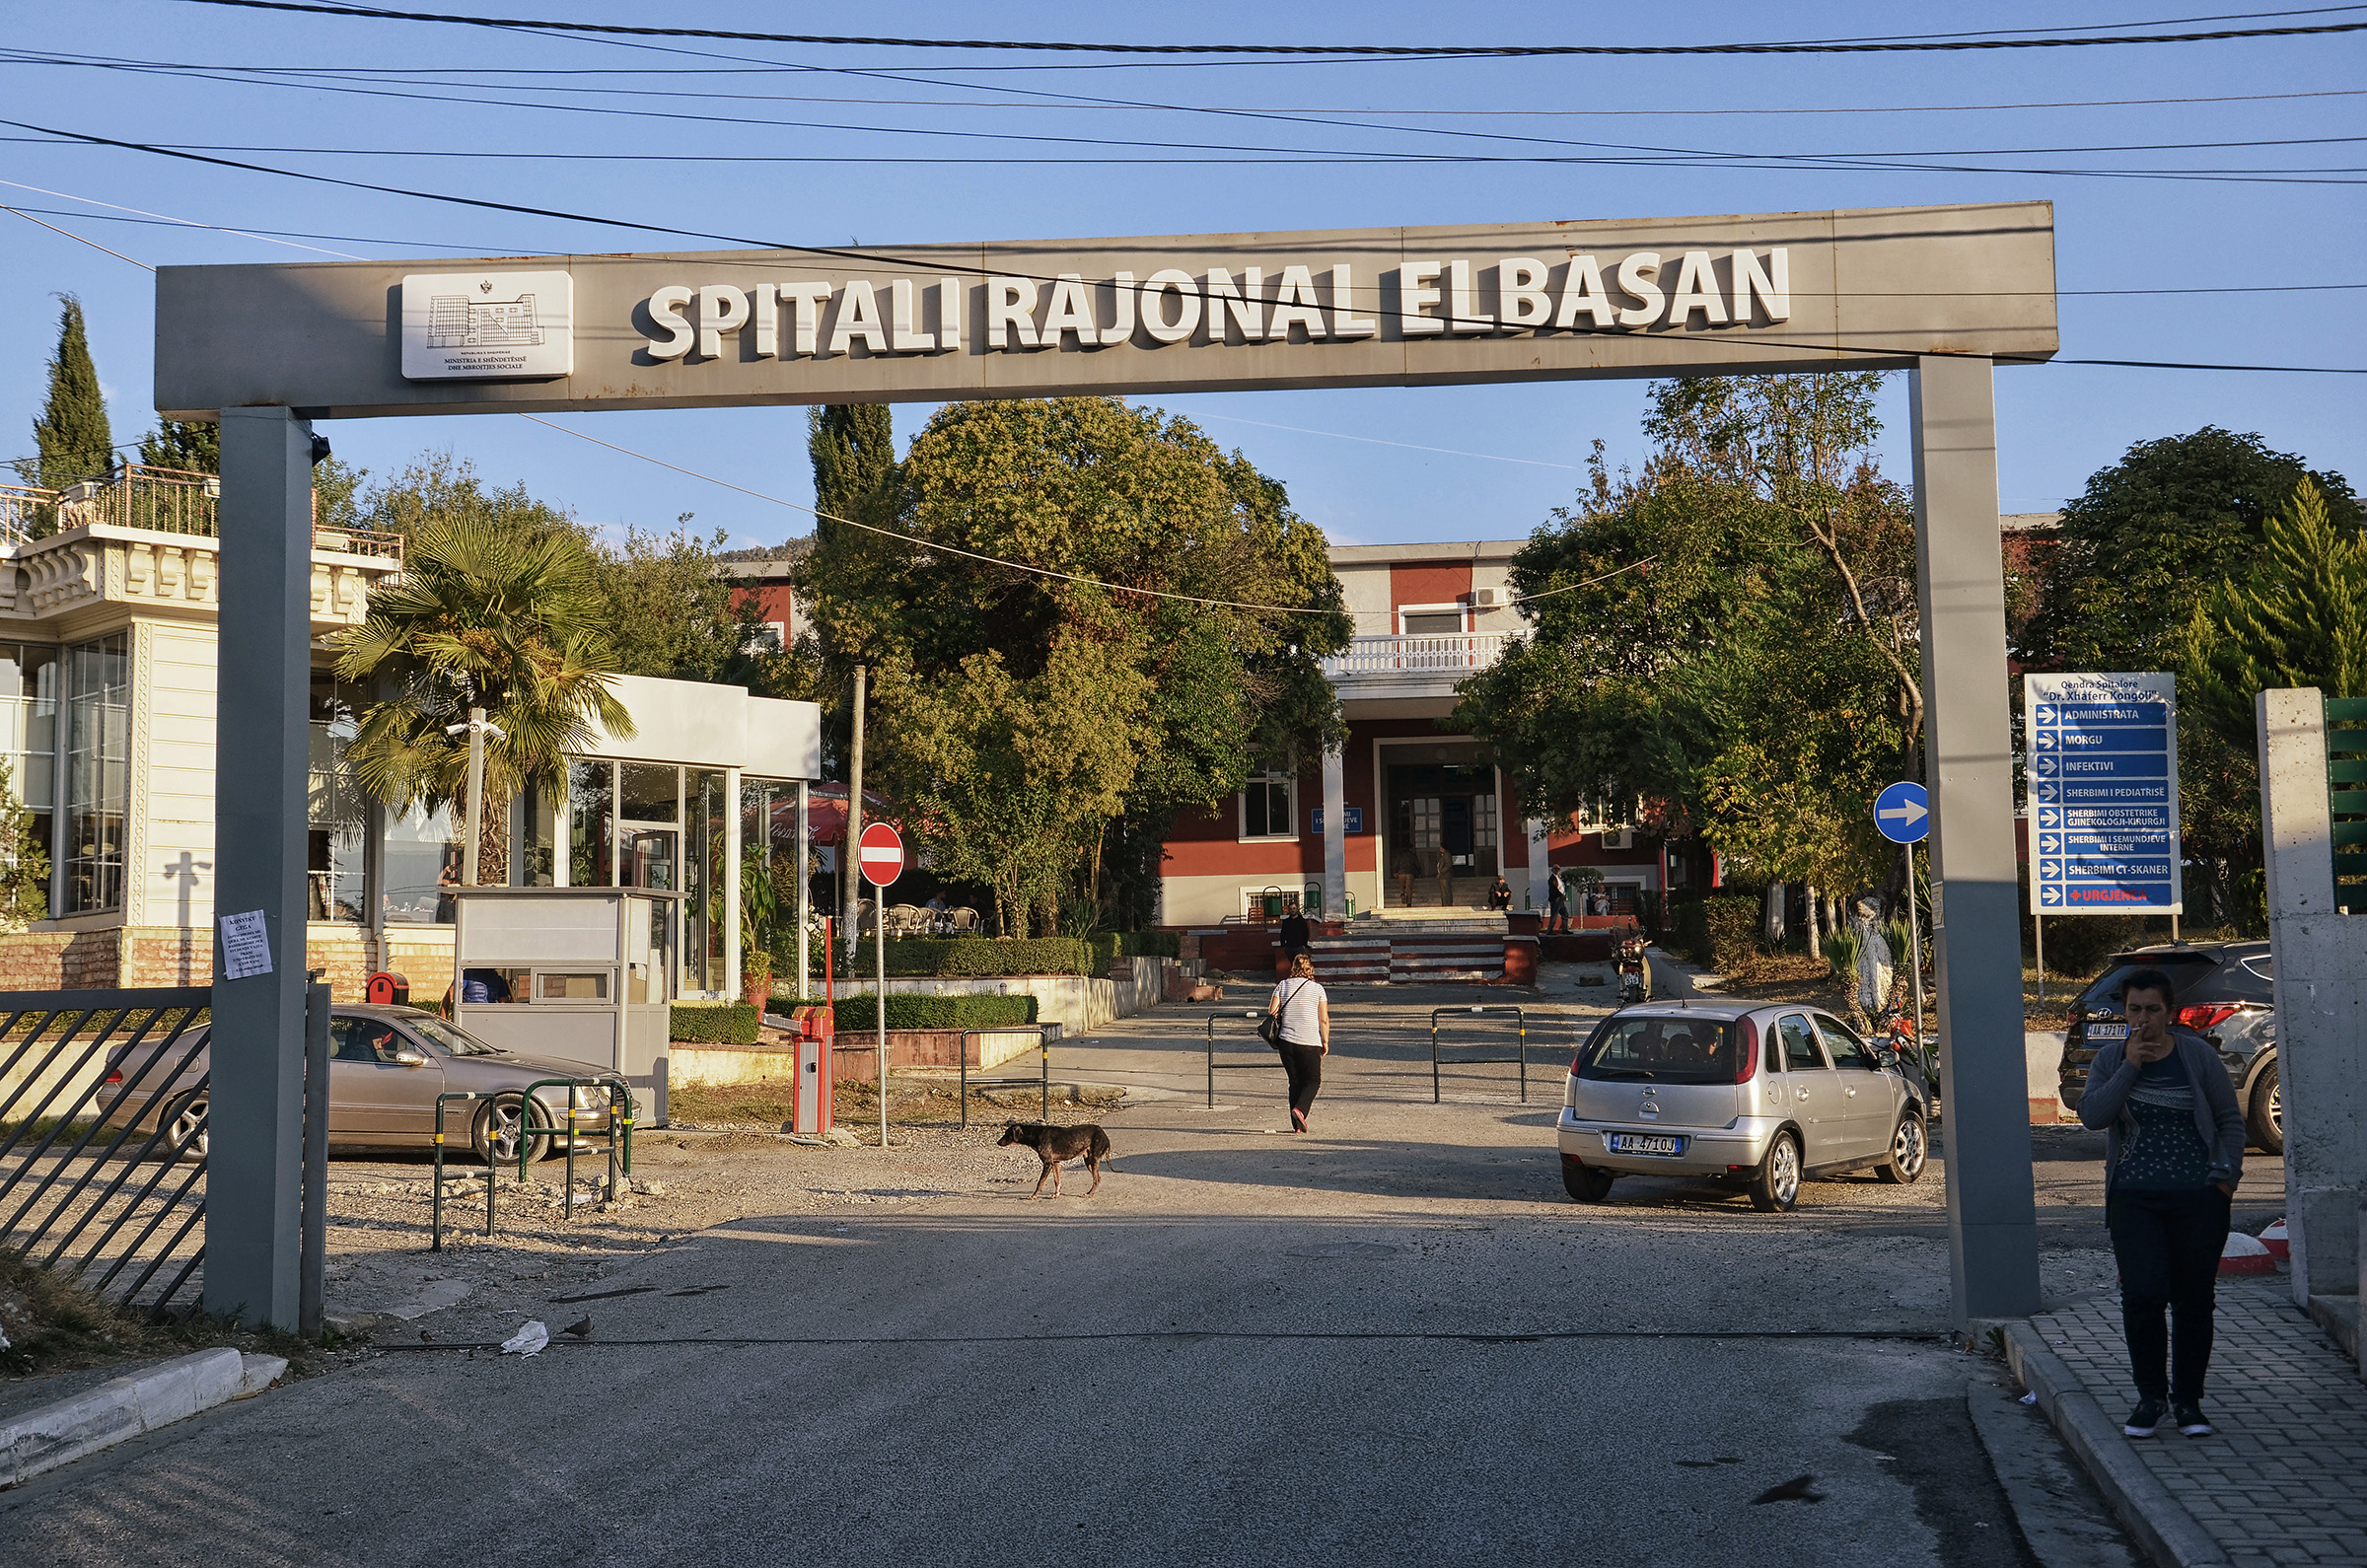 “Jam përdhunuar gjatë natës”, 25-vjeçarja në Elbasan shkoi në spital bashkë me motrën, mjekët ngrenë në këmbë policinë